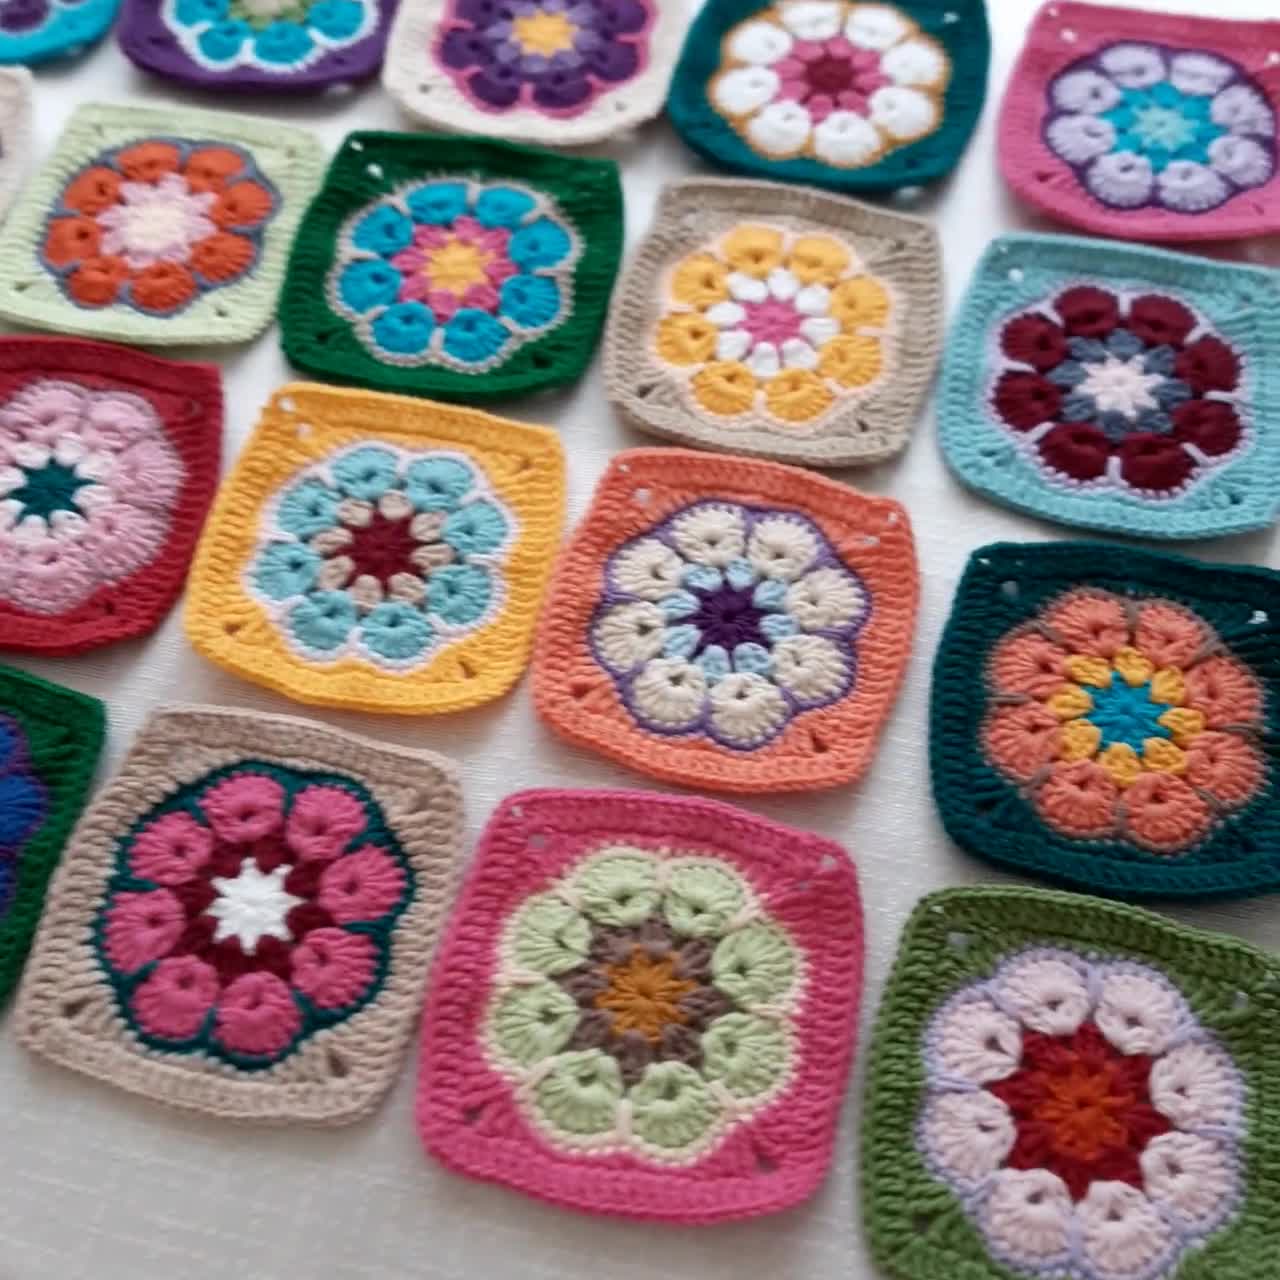 Blanket Crochet Kit for Beginners. Granny Square Crochet 